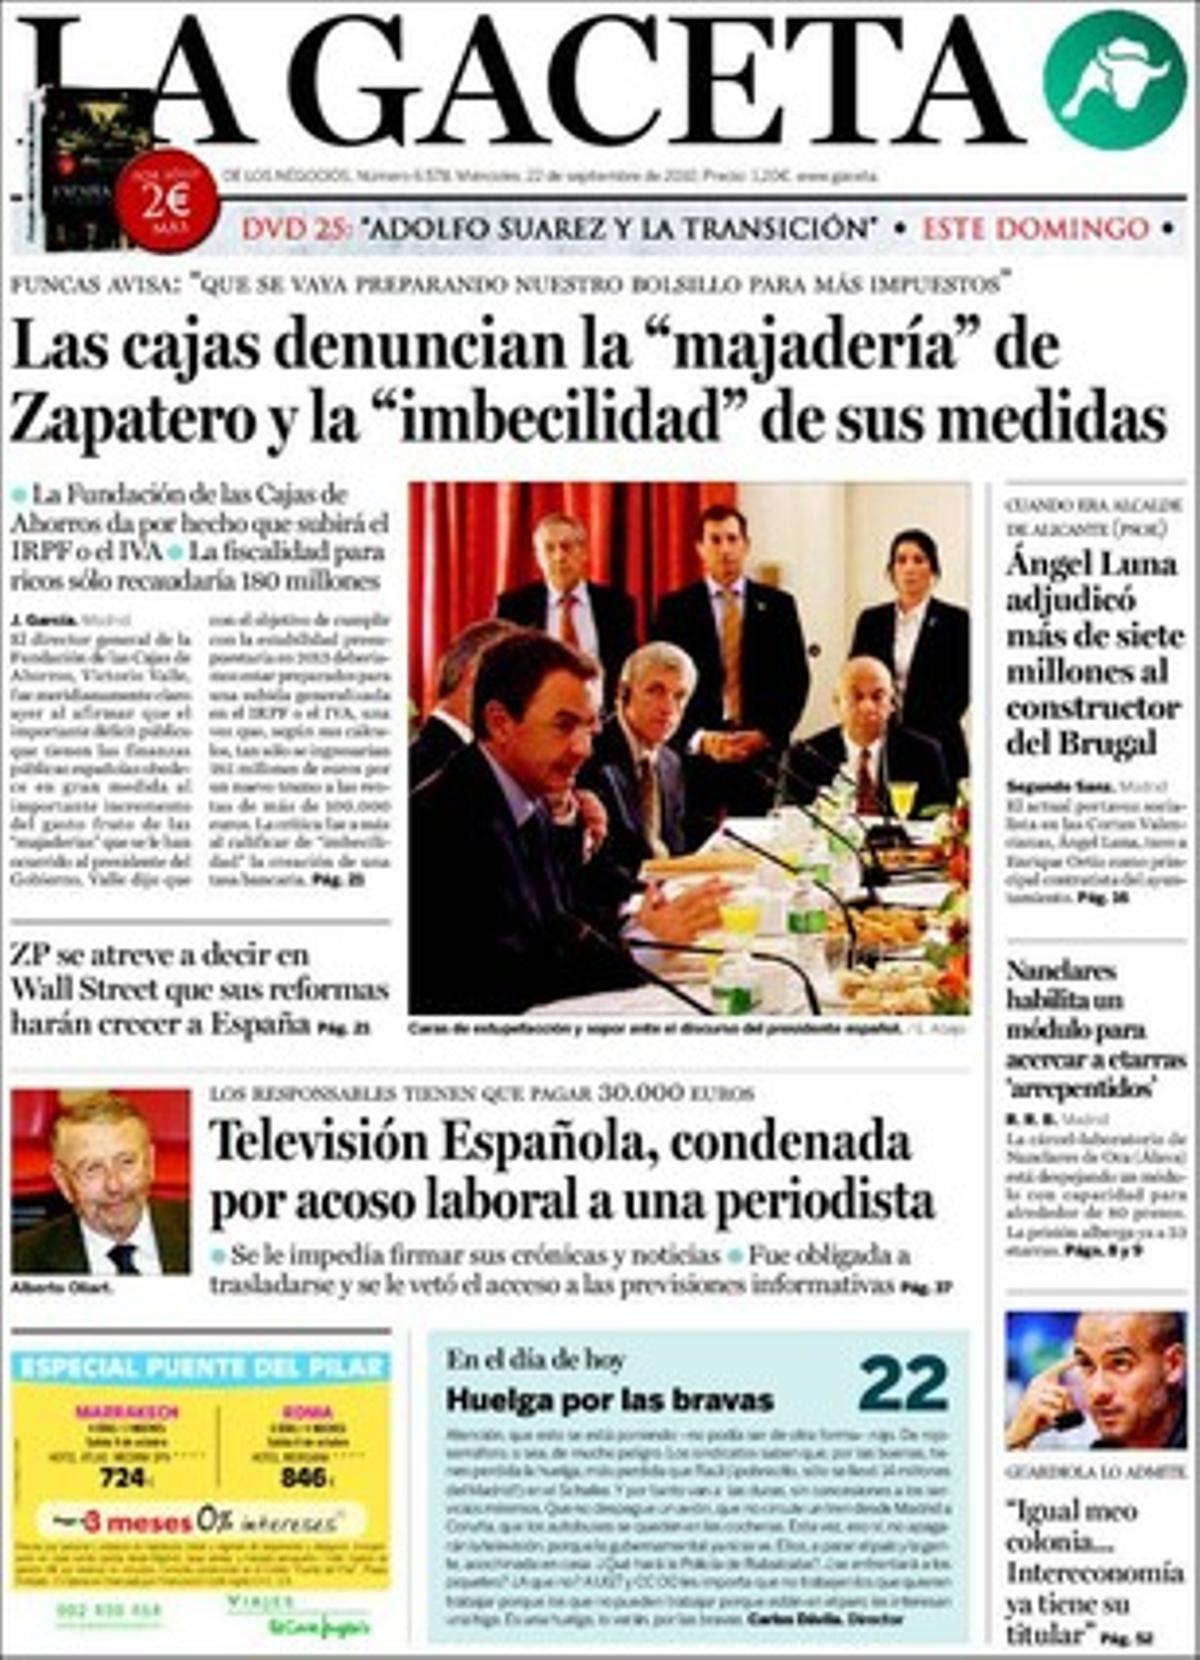 ’La Gaceta’ despliega en páginas interiores que las asociaciones de victimas del terrorismo y el PP demandan una ley que prohiba al Gobierno negociar con ETA y que Artur Mas anunció que auditará las cuentas del tripartito si gana el 28-N